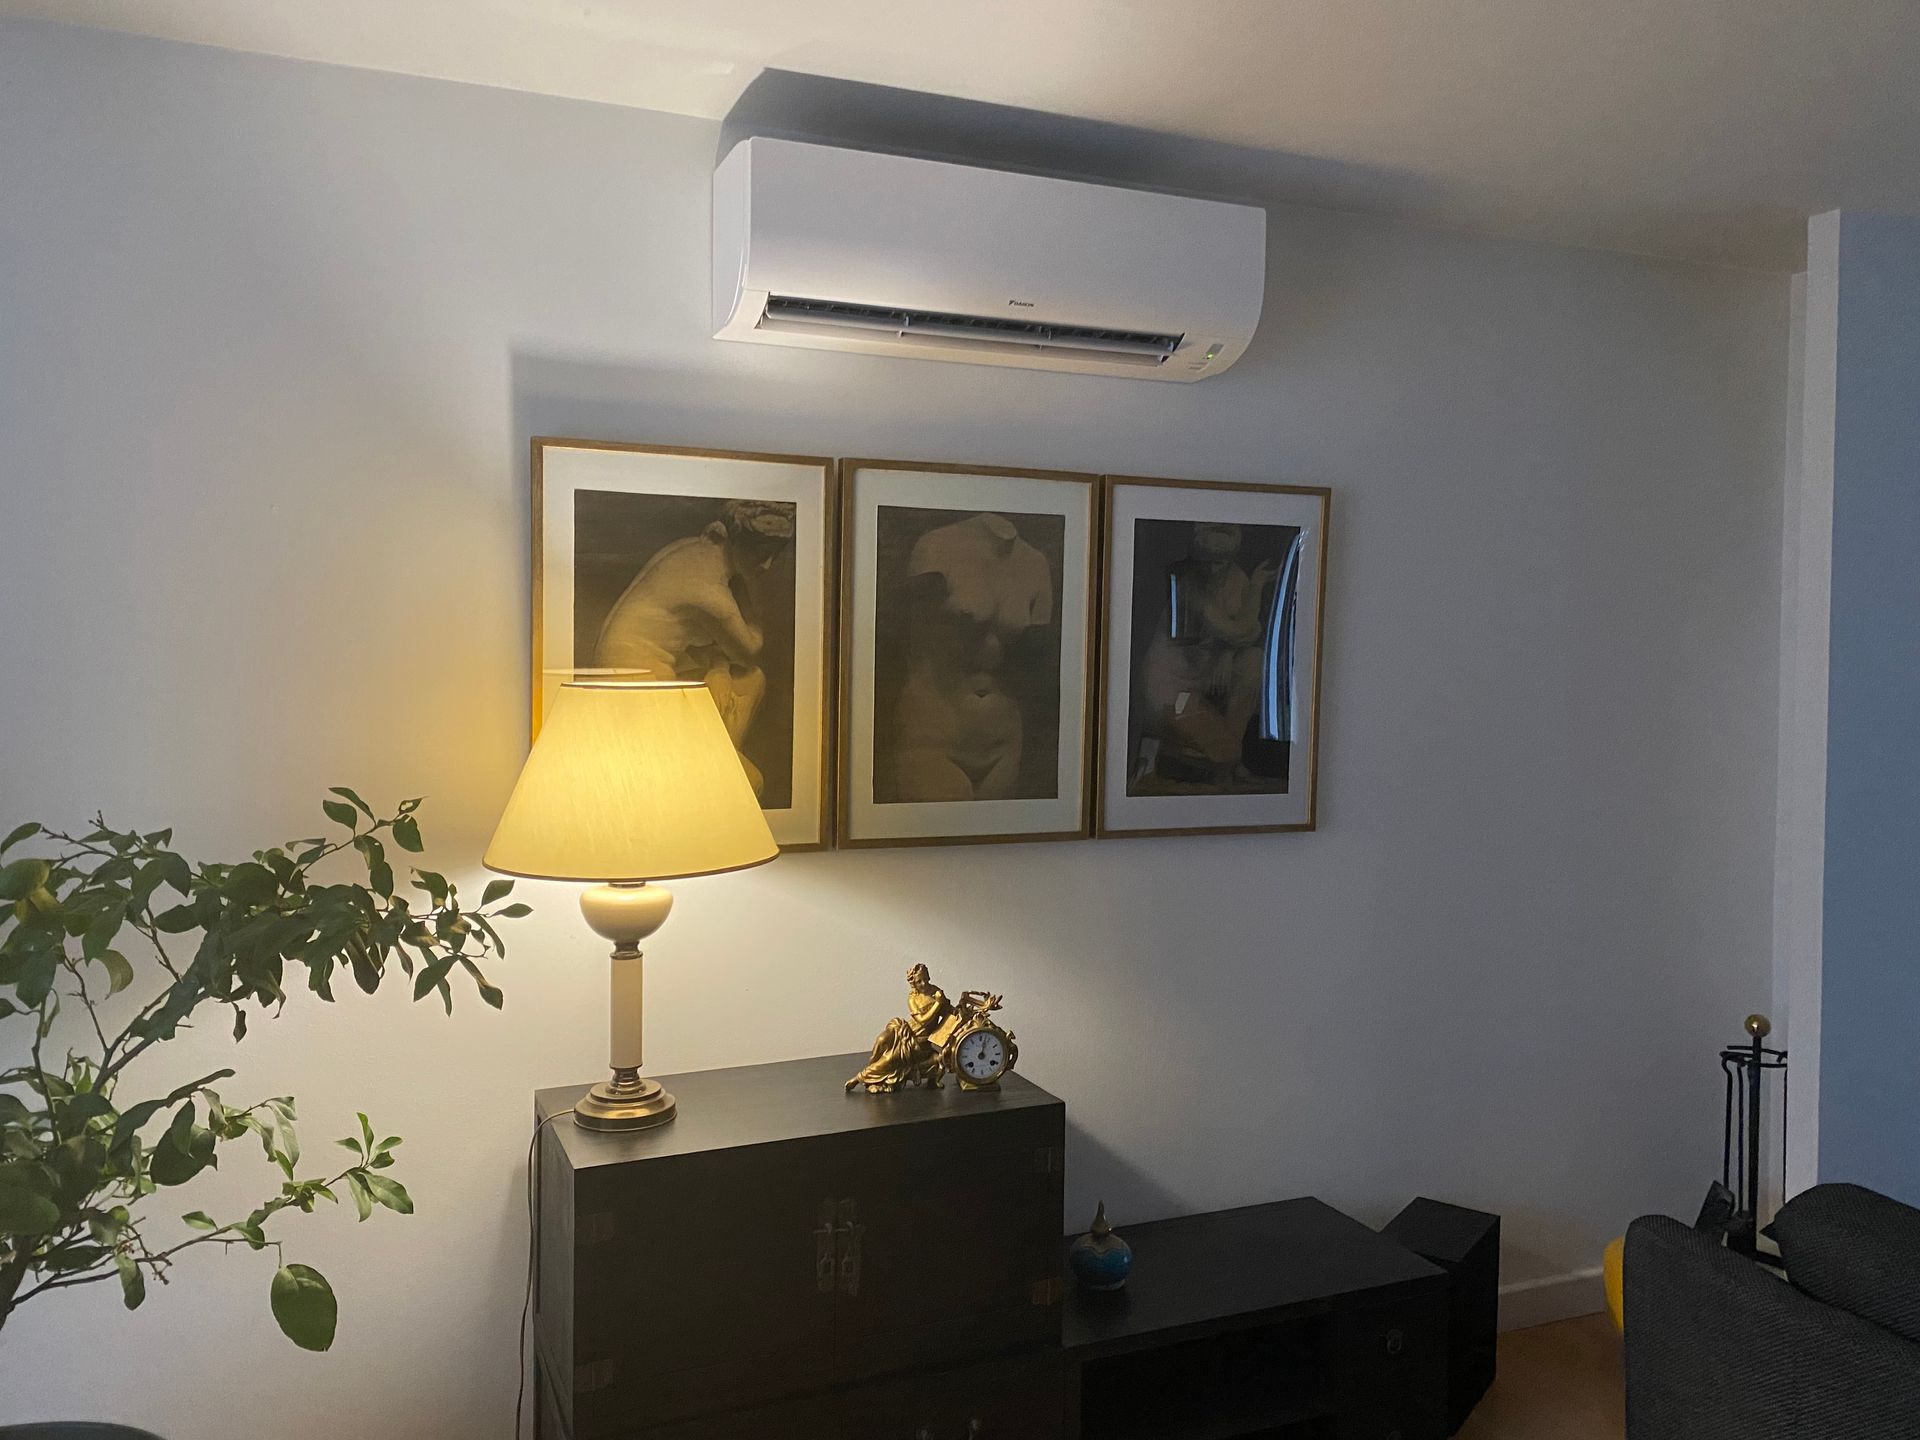 Unité intérieure de climatisation installée en haut d'un mur d'une pièce à vivre.